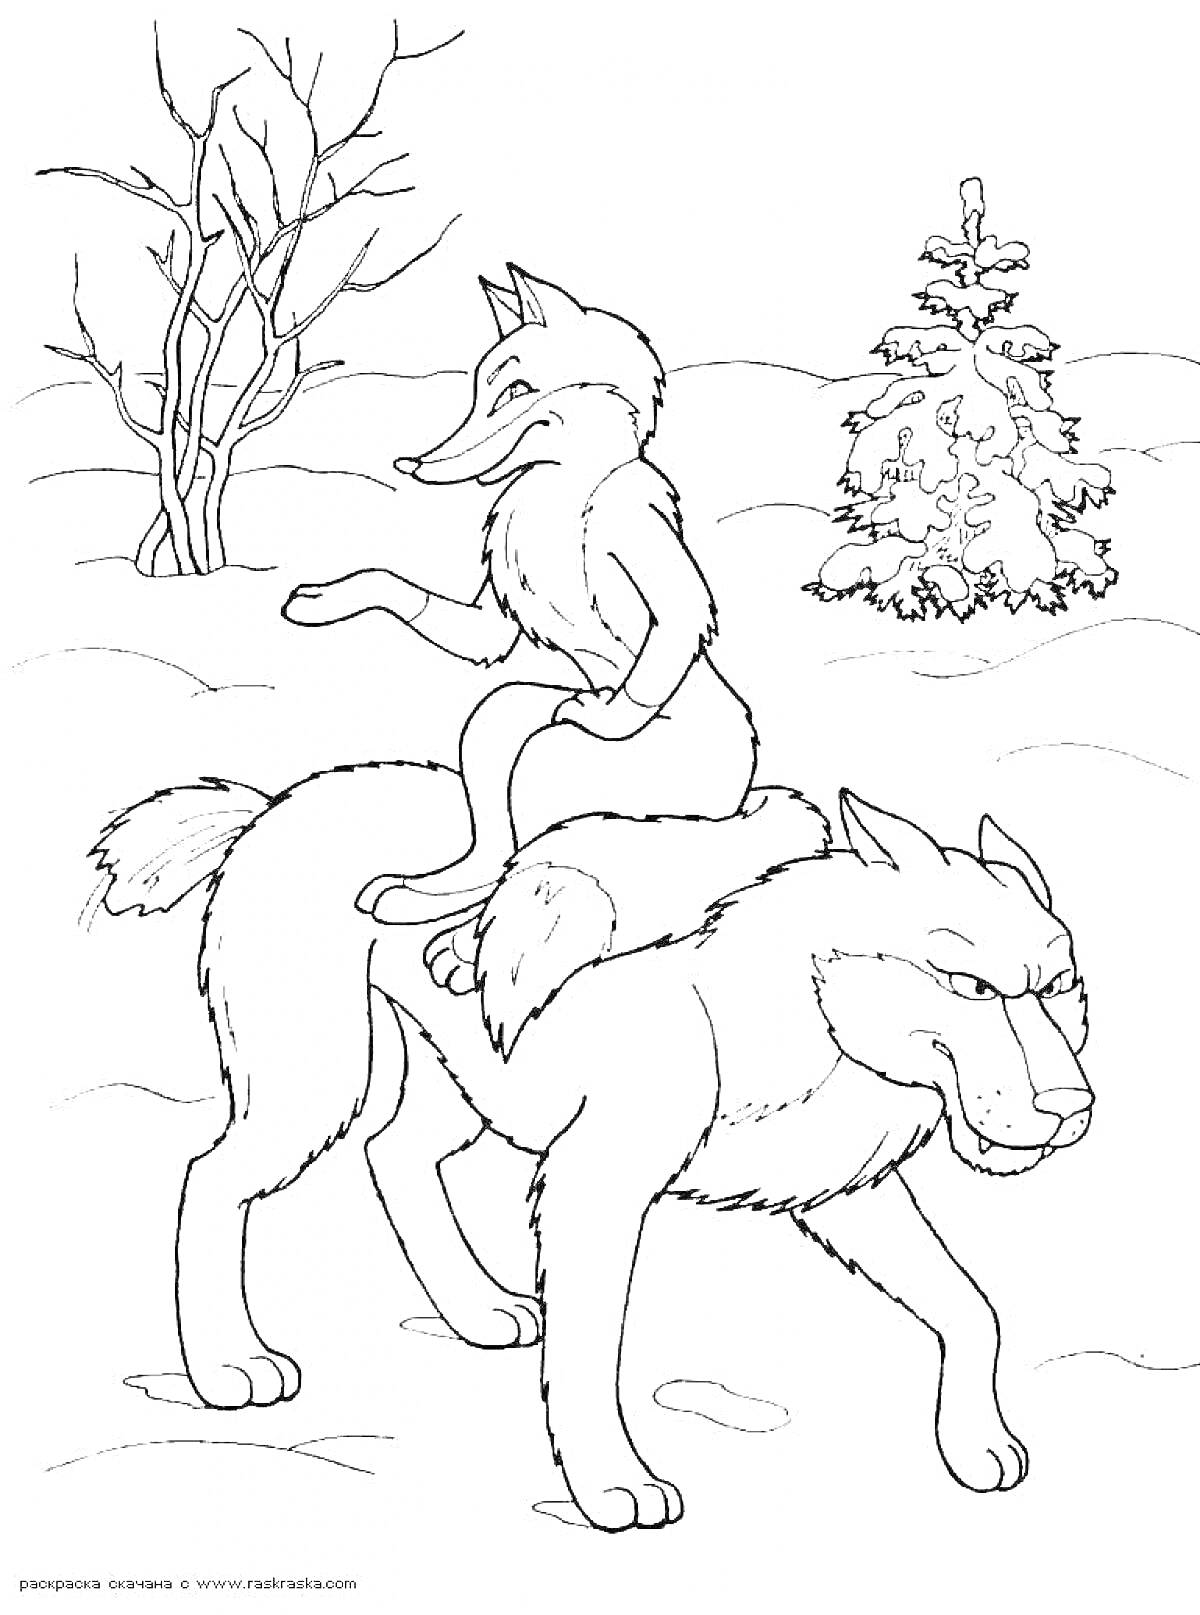 Раскраска Лисичка на спине серого волка зимой с деревьями на заднем плане